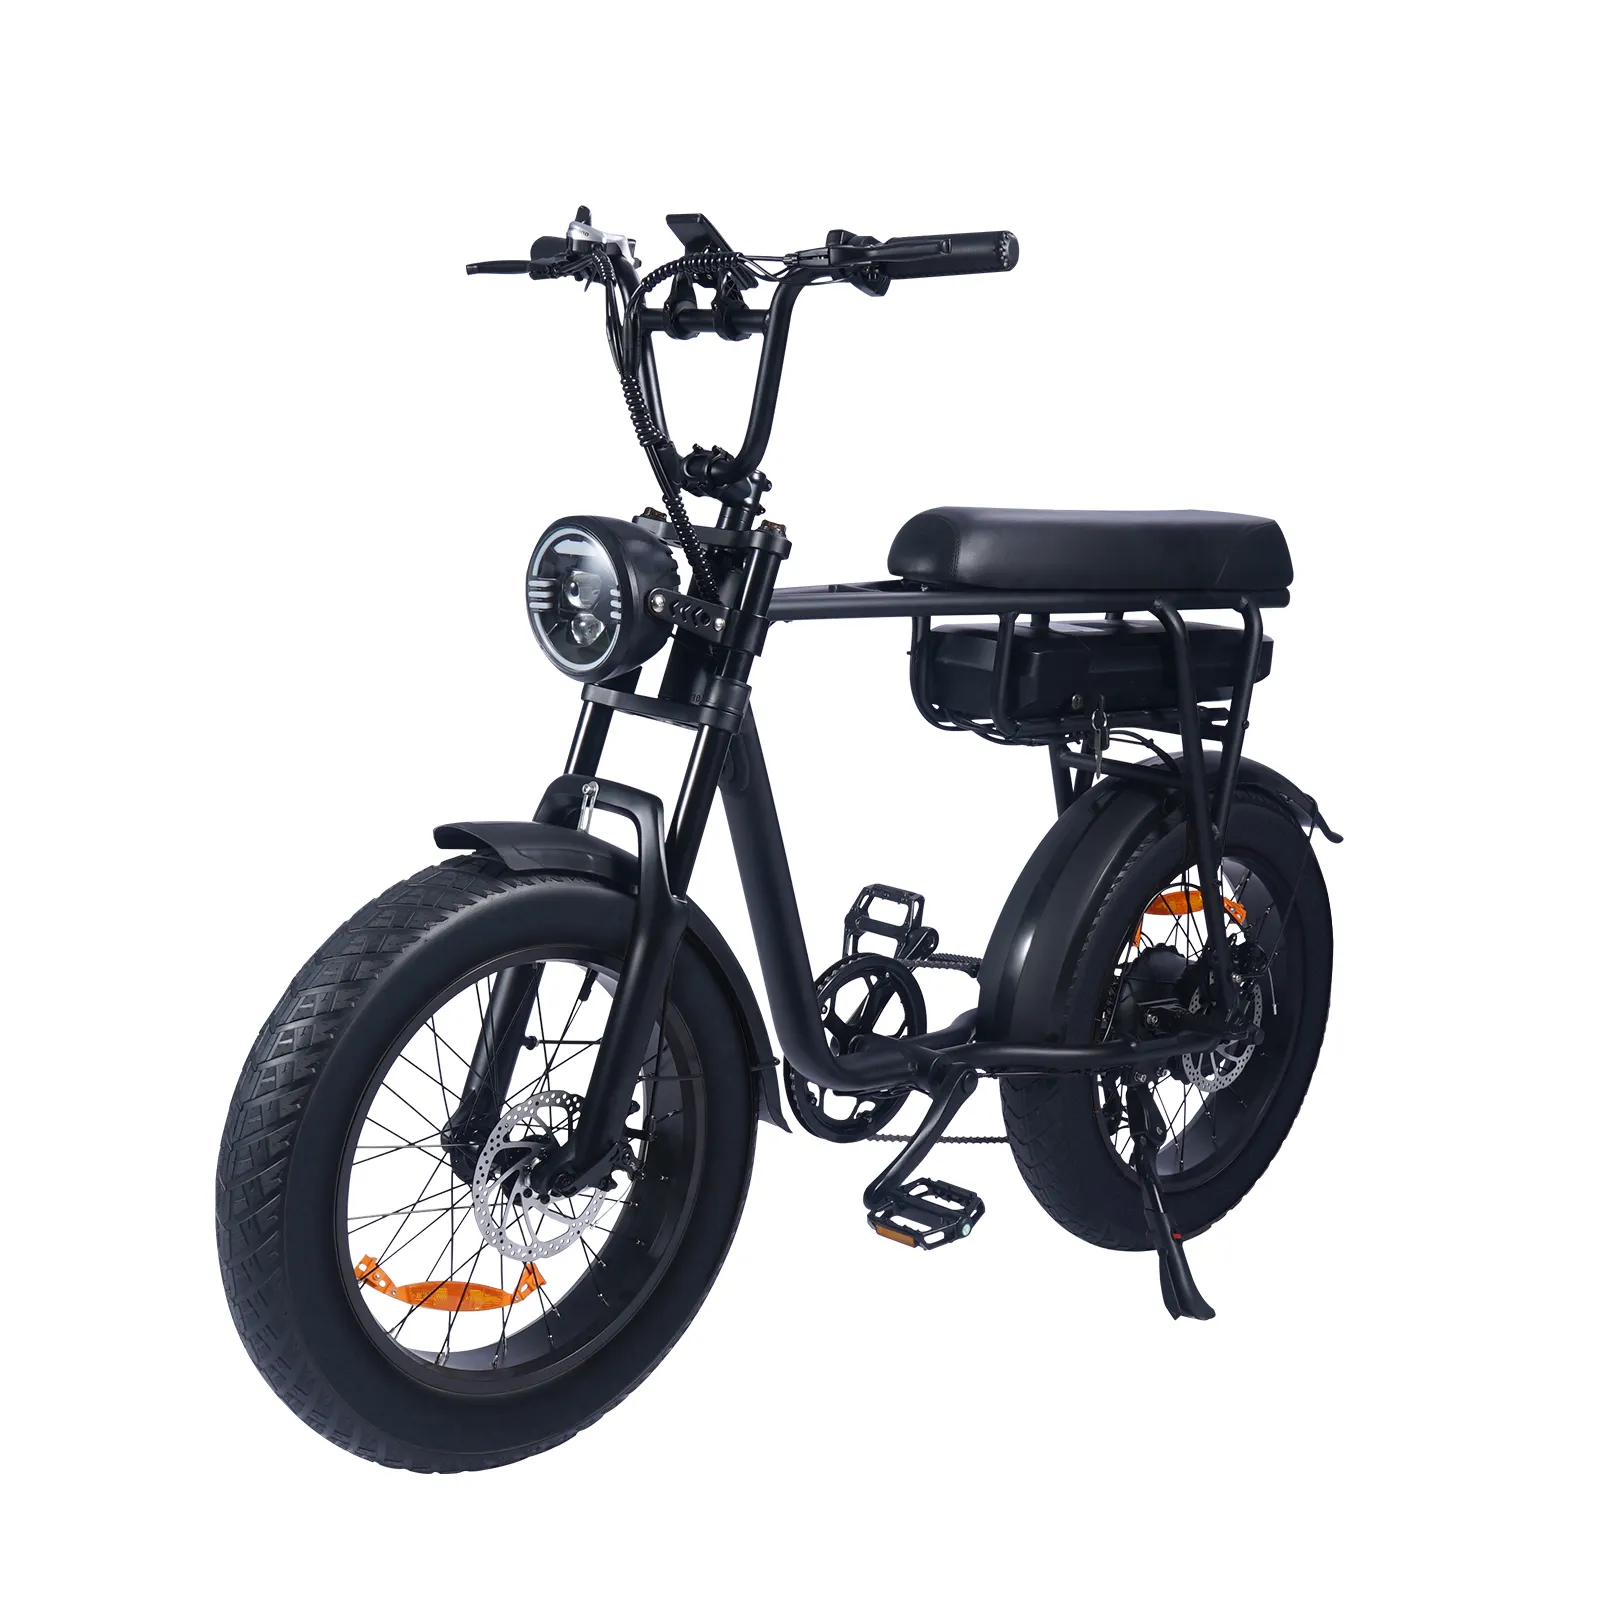 Ebike más atractiva 1000W 48V bicicleta de montaña eléctrica aleación de aluminio Fat Bike Beach Cruiser bicicleta grandes neumáticos E bicicleta para adultos